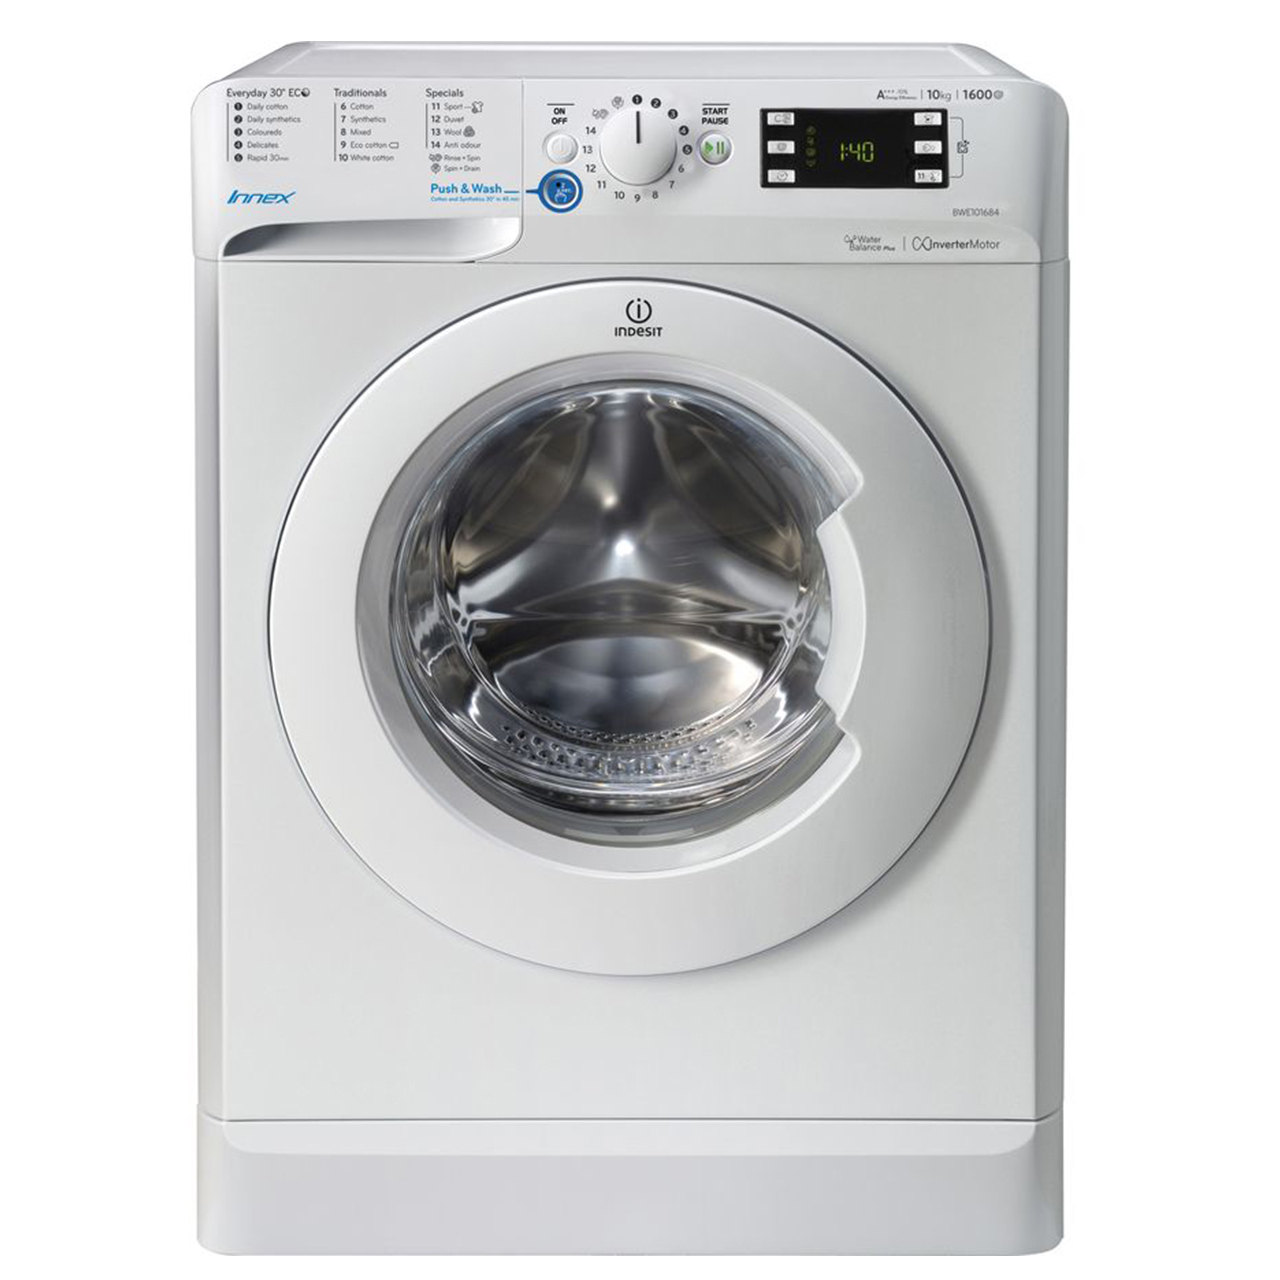 ماشین لباسشویی ایندزیت مدل bwe 101684 W UK ظرفیت 10 کیلوگرم